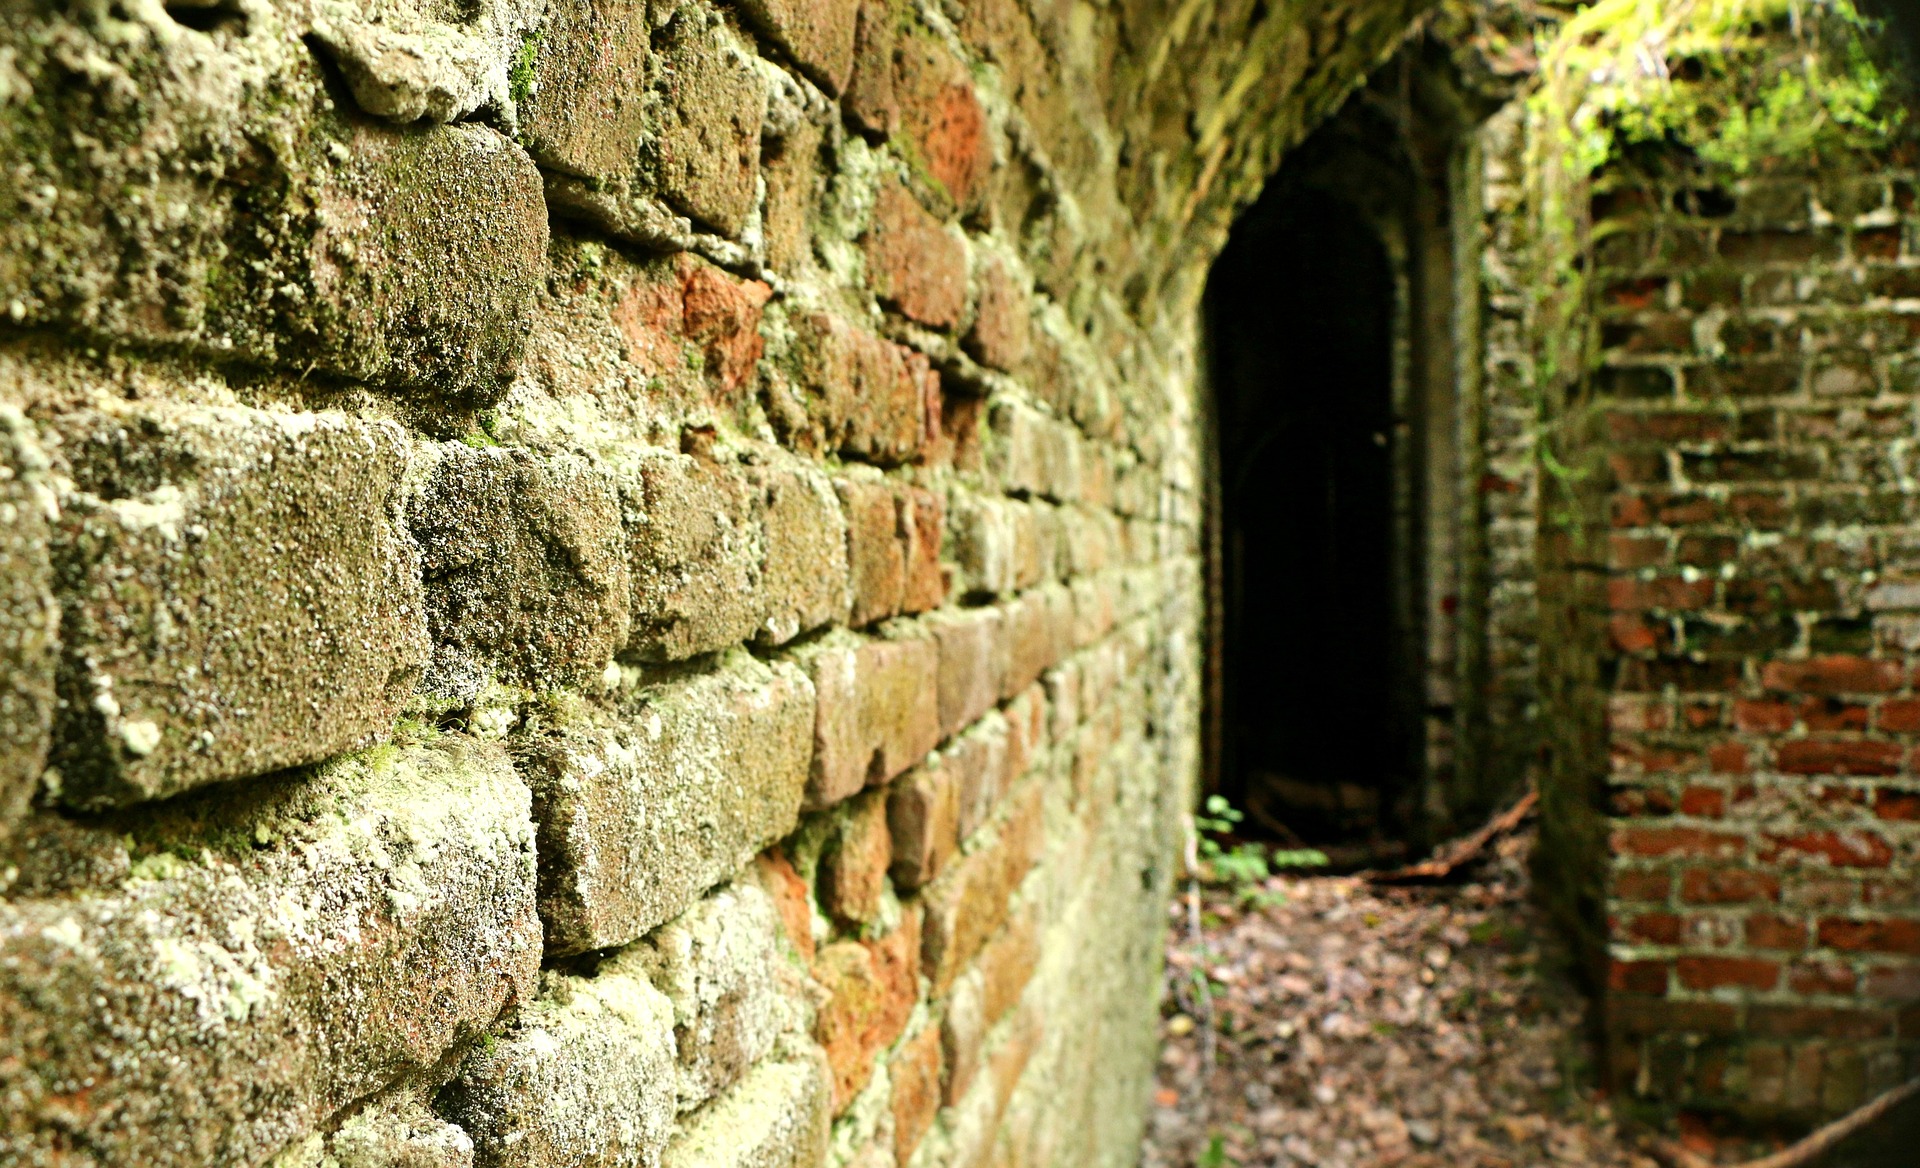 Eingang zum Tunnel (c) Bild von klimkin auf Pixabay